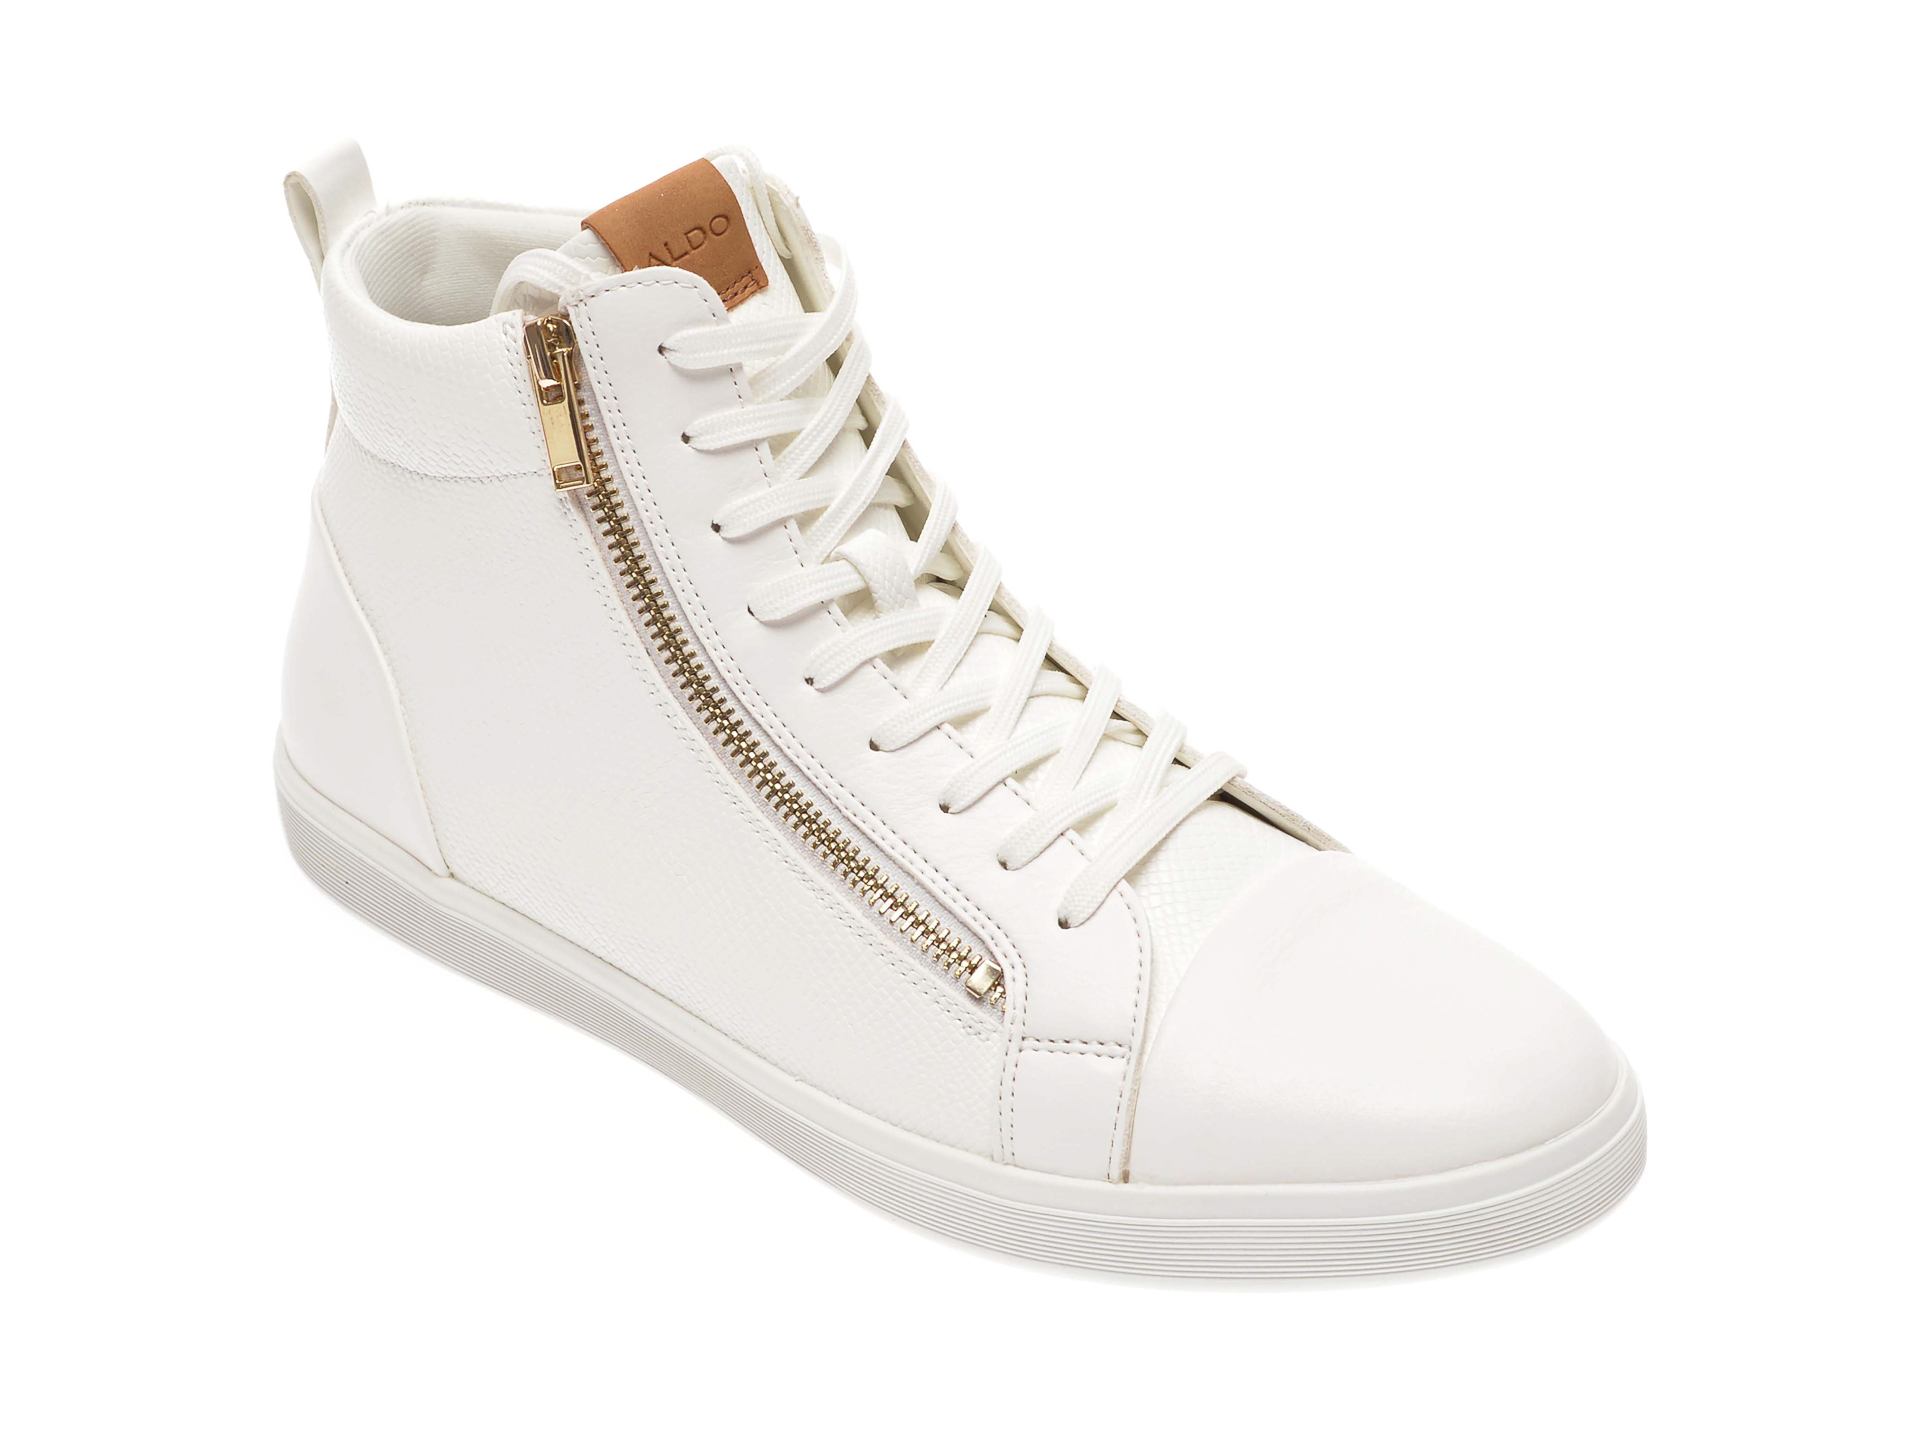 Pantofi ALDO albi, Kelston100, din piele ecologica imagine Black Friday 2021